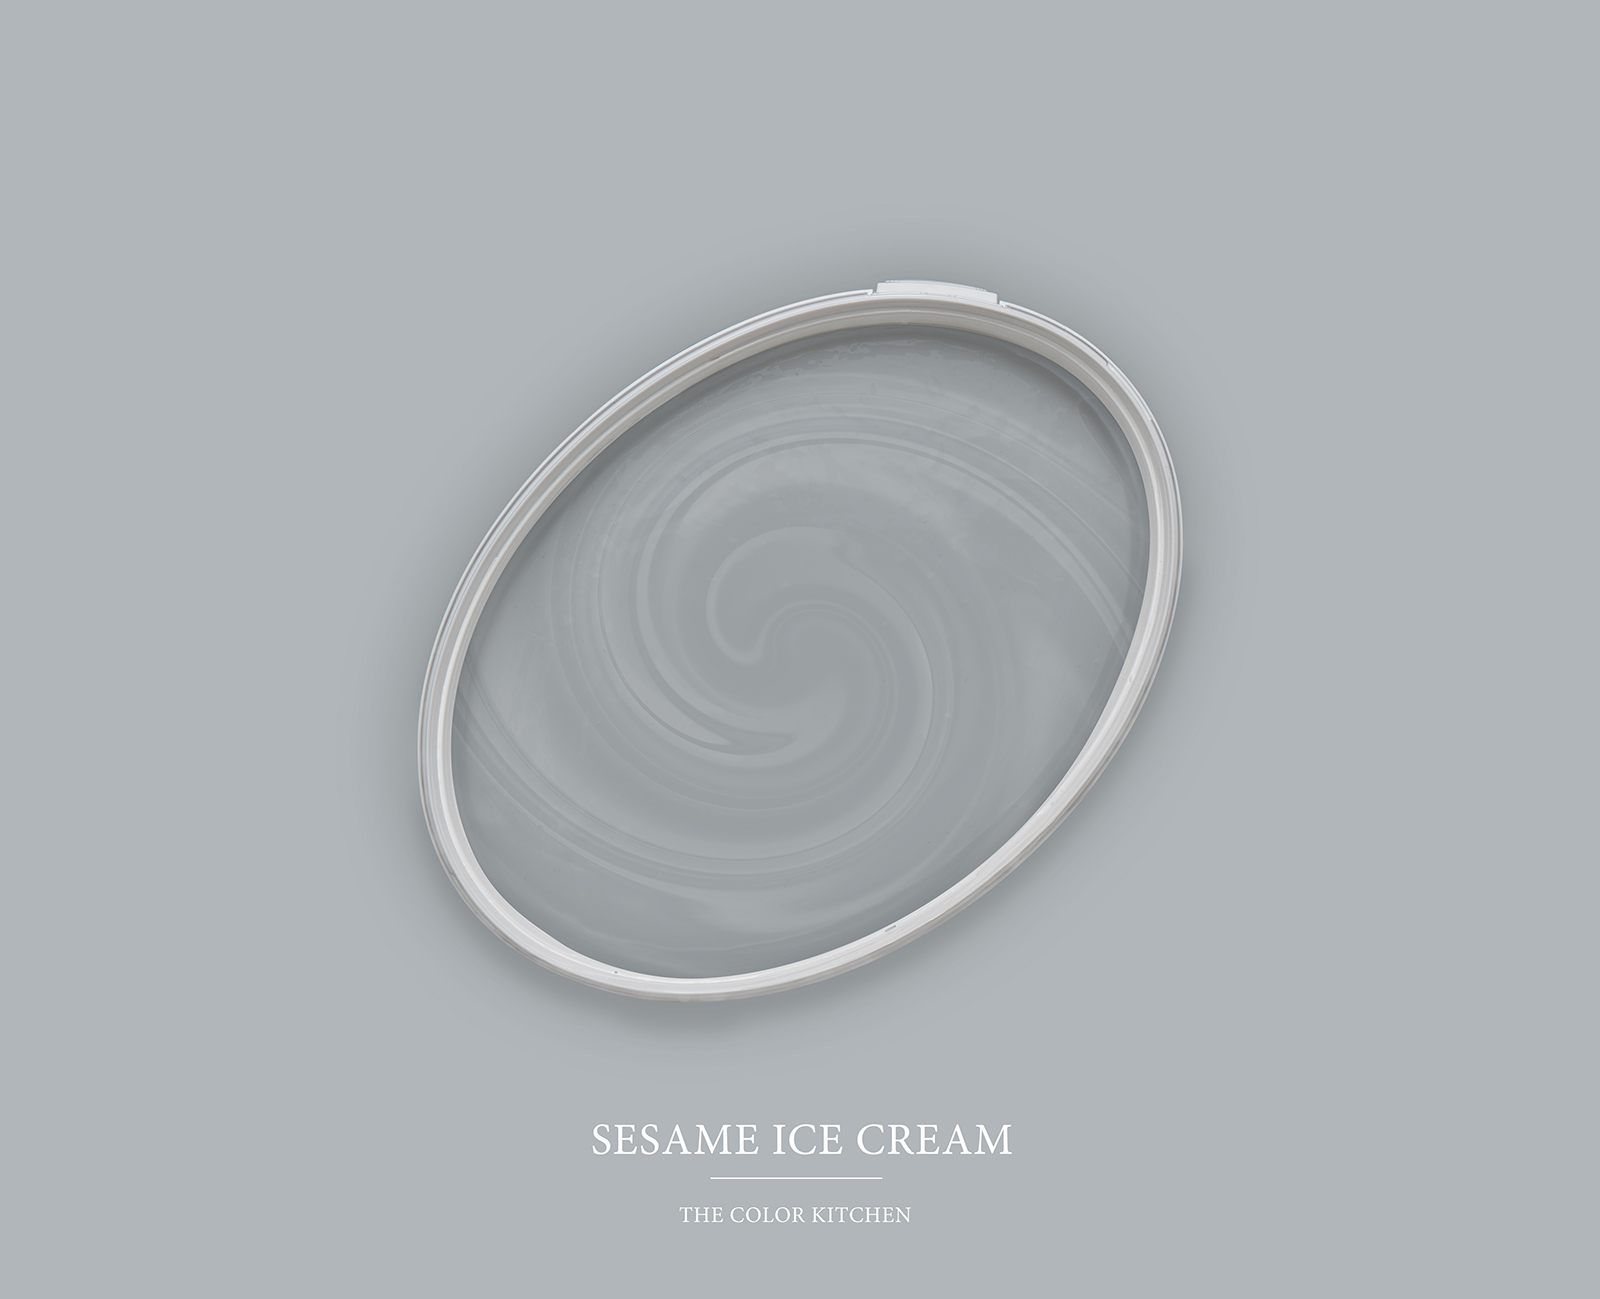 Peinture murale TCK1005 »Sesame Ice Cream« en gris clair bleuté – 5,0 litres
